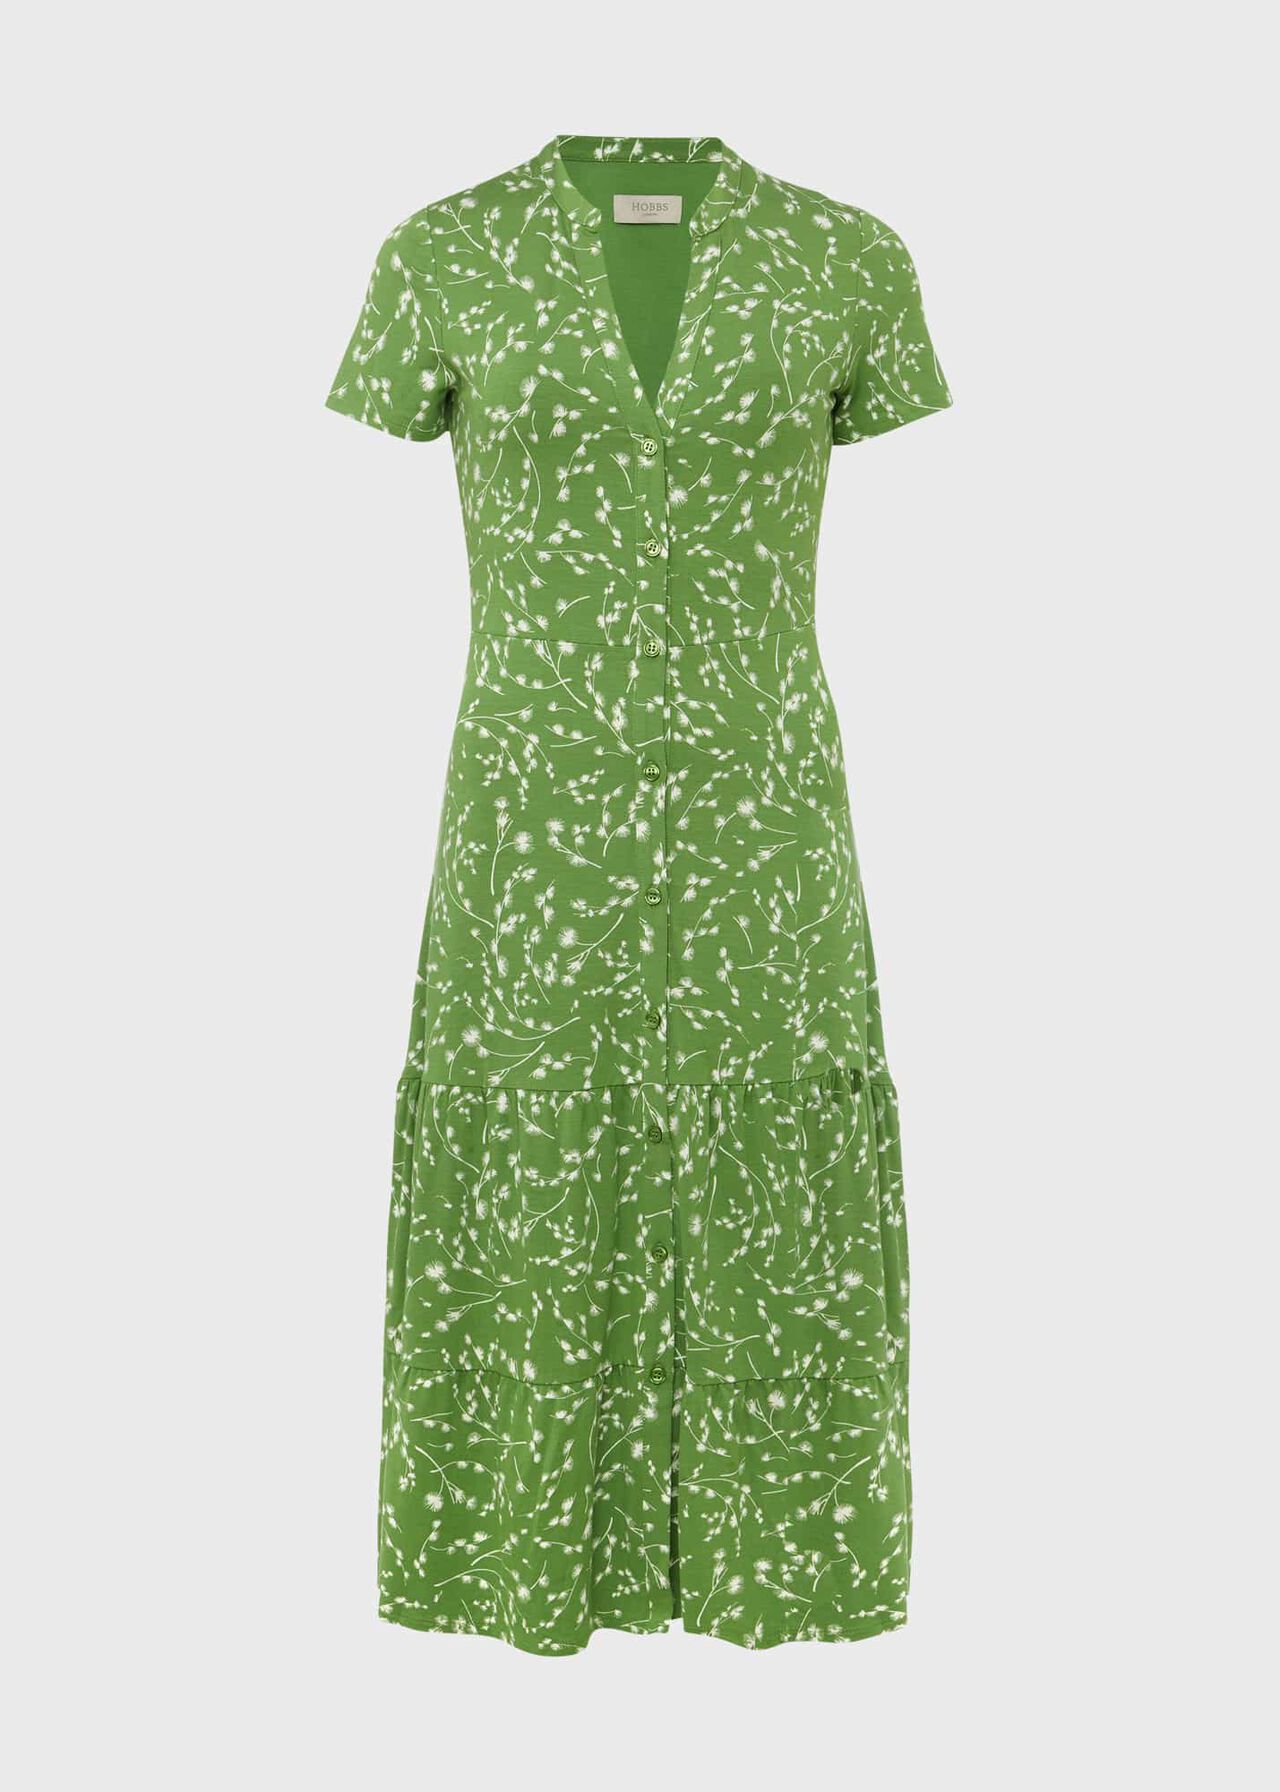 Jacinta Jersey Dress, Green Ivory, hi-res